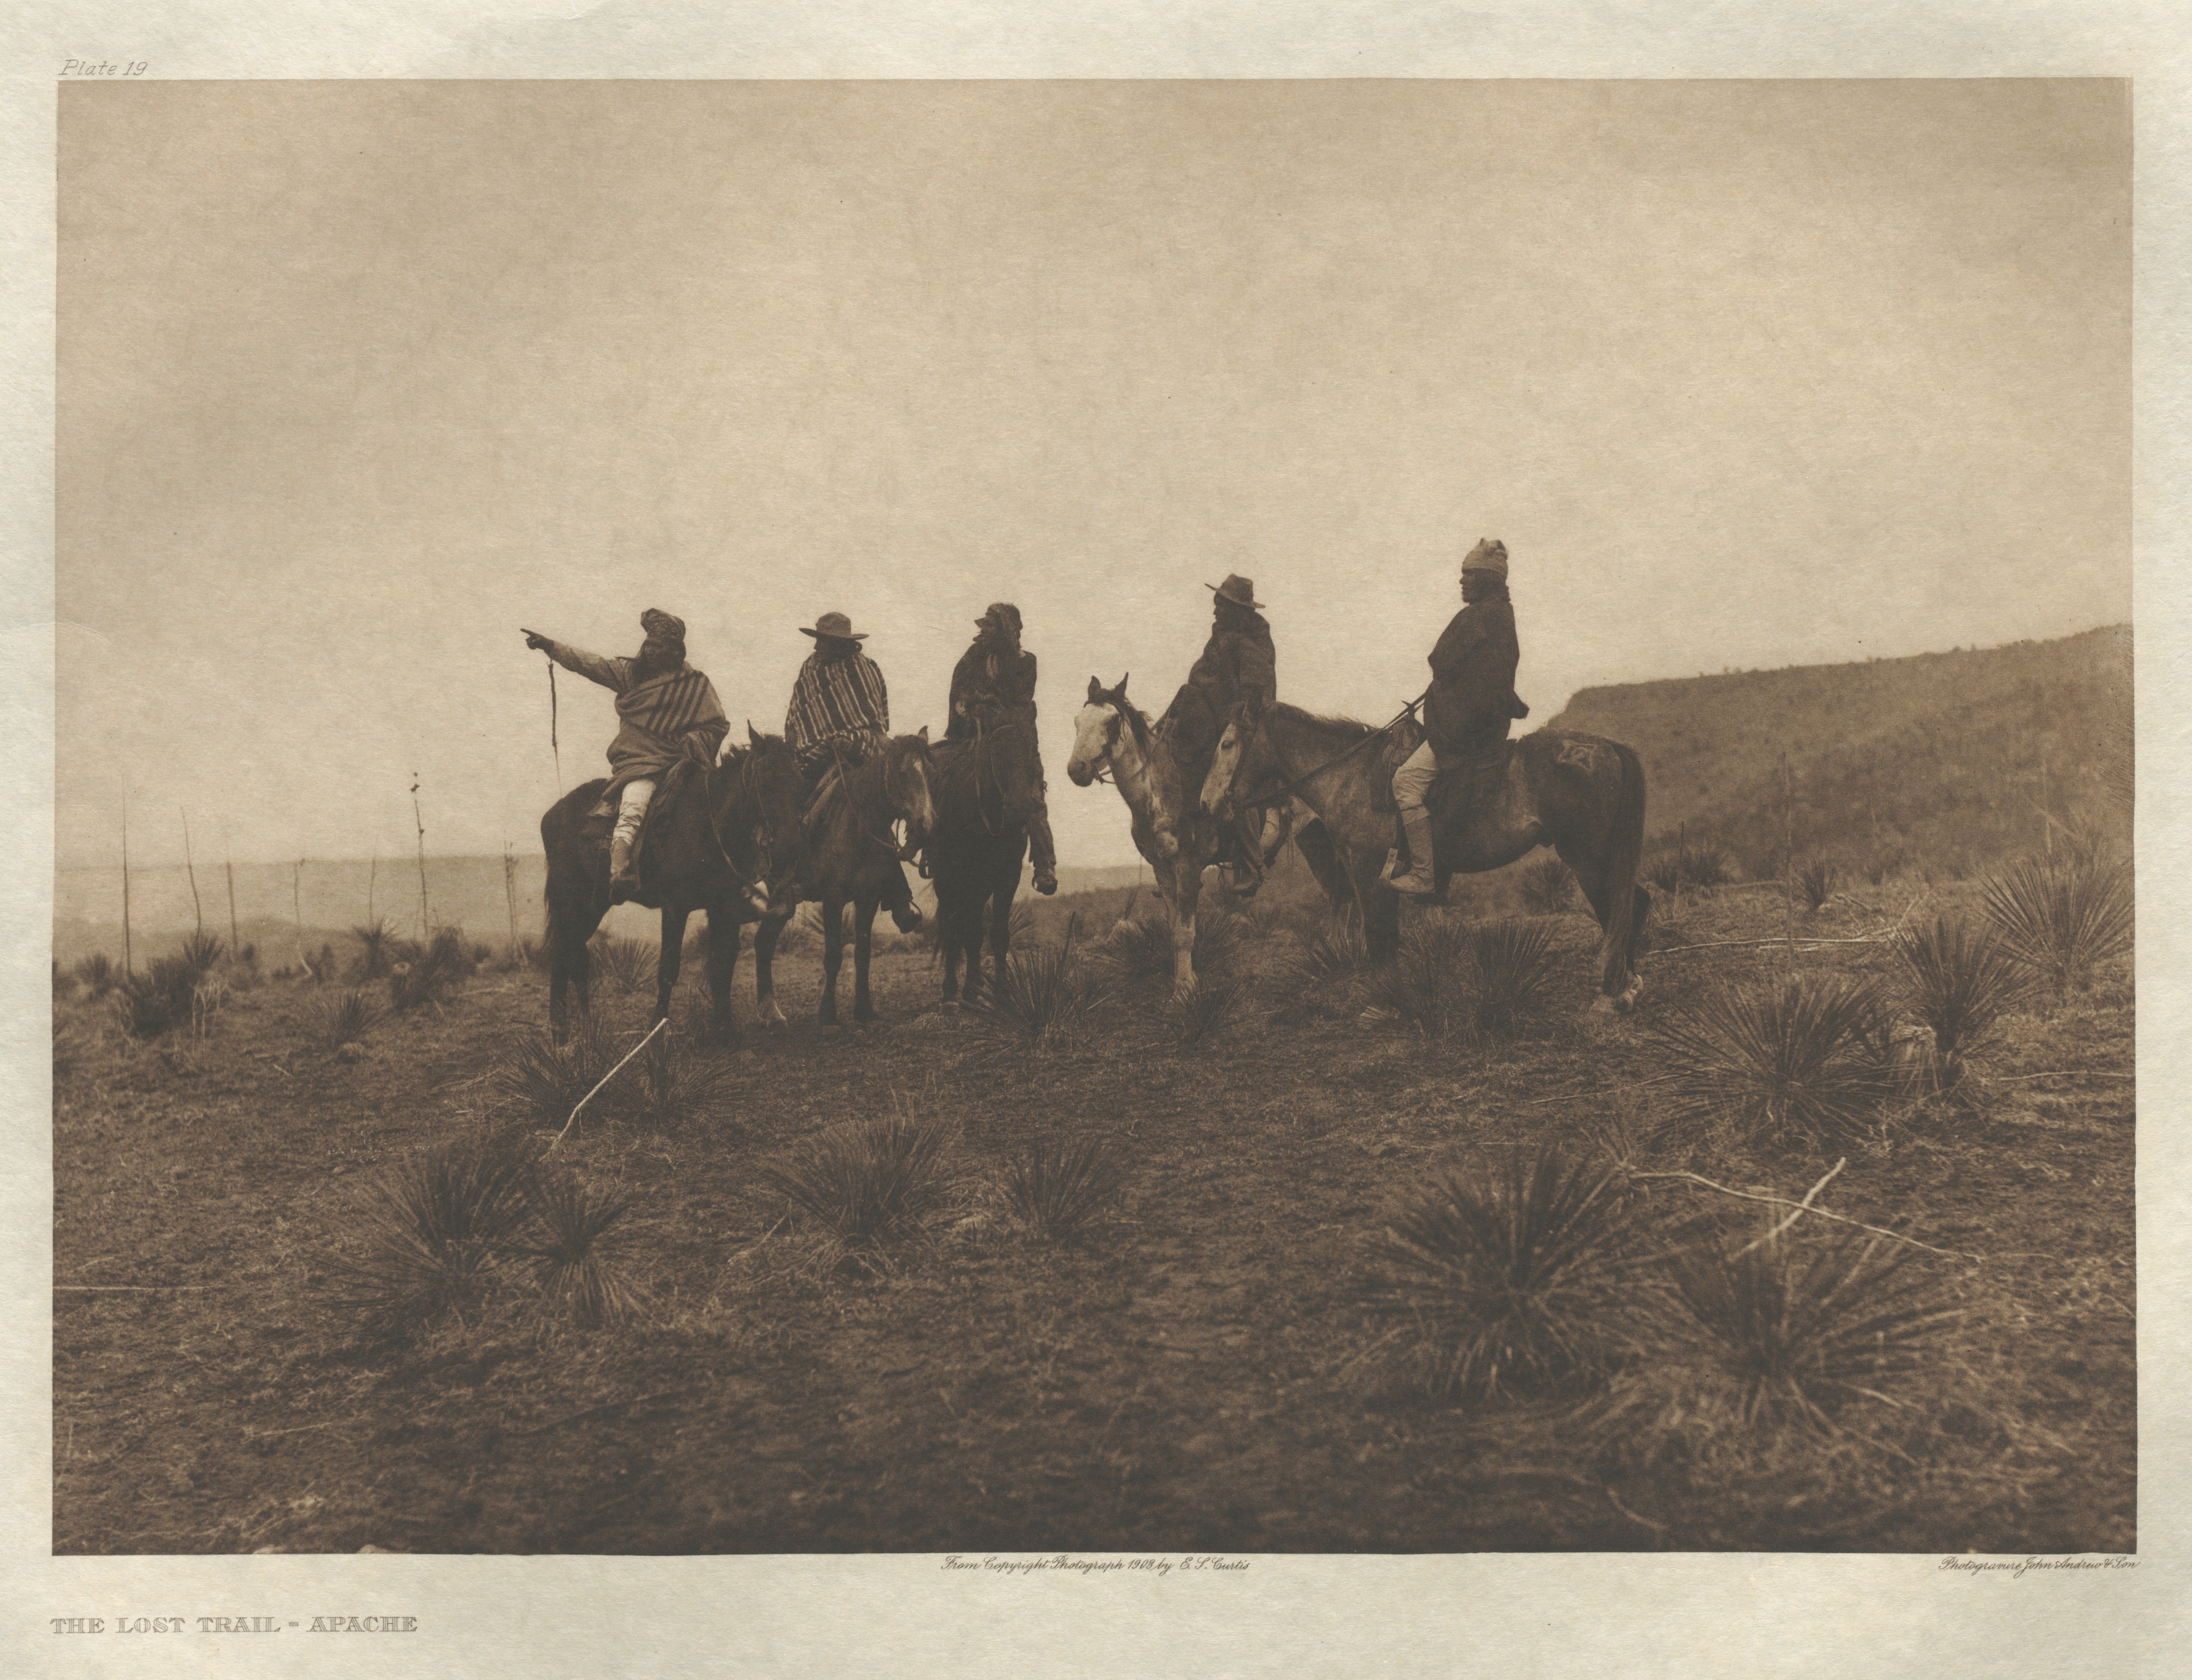 Portfolio I, Plate 19: The Lost Trail-Apache